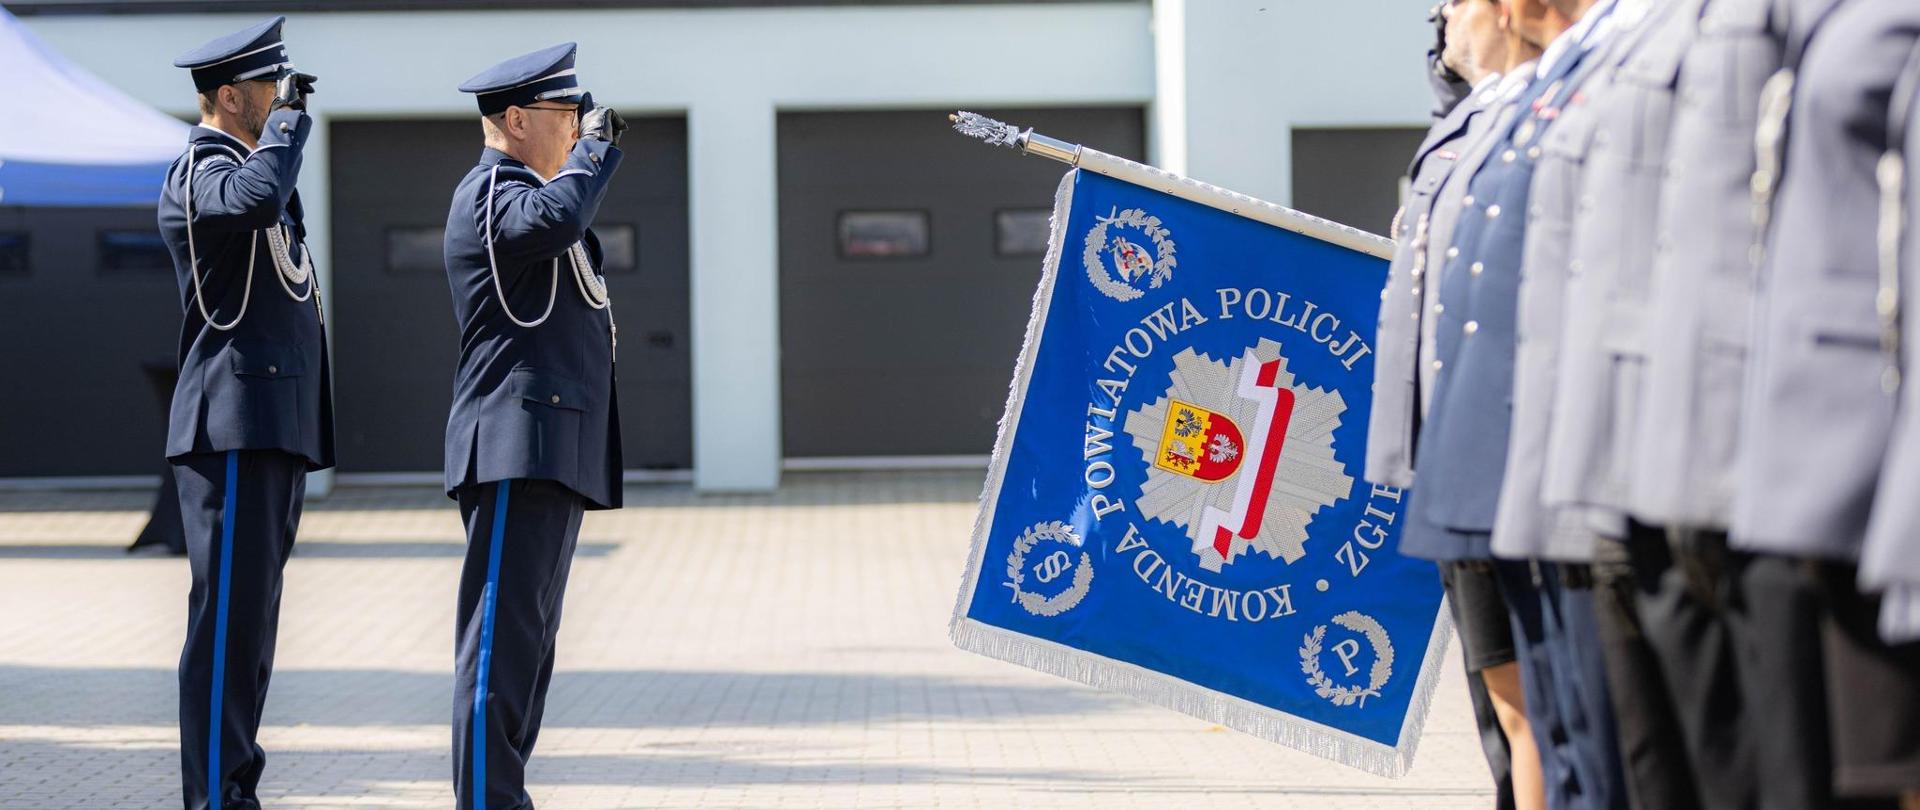 Oficerowie policyjni w trakcie salutowania 